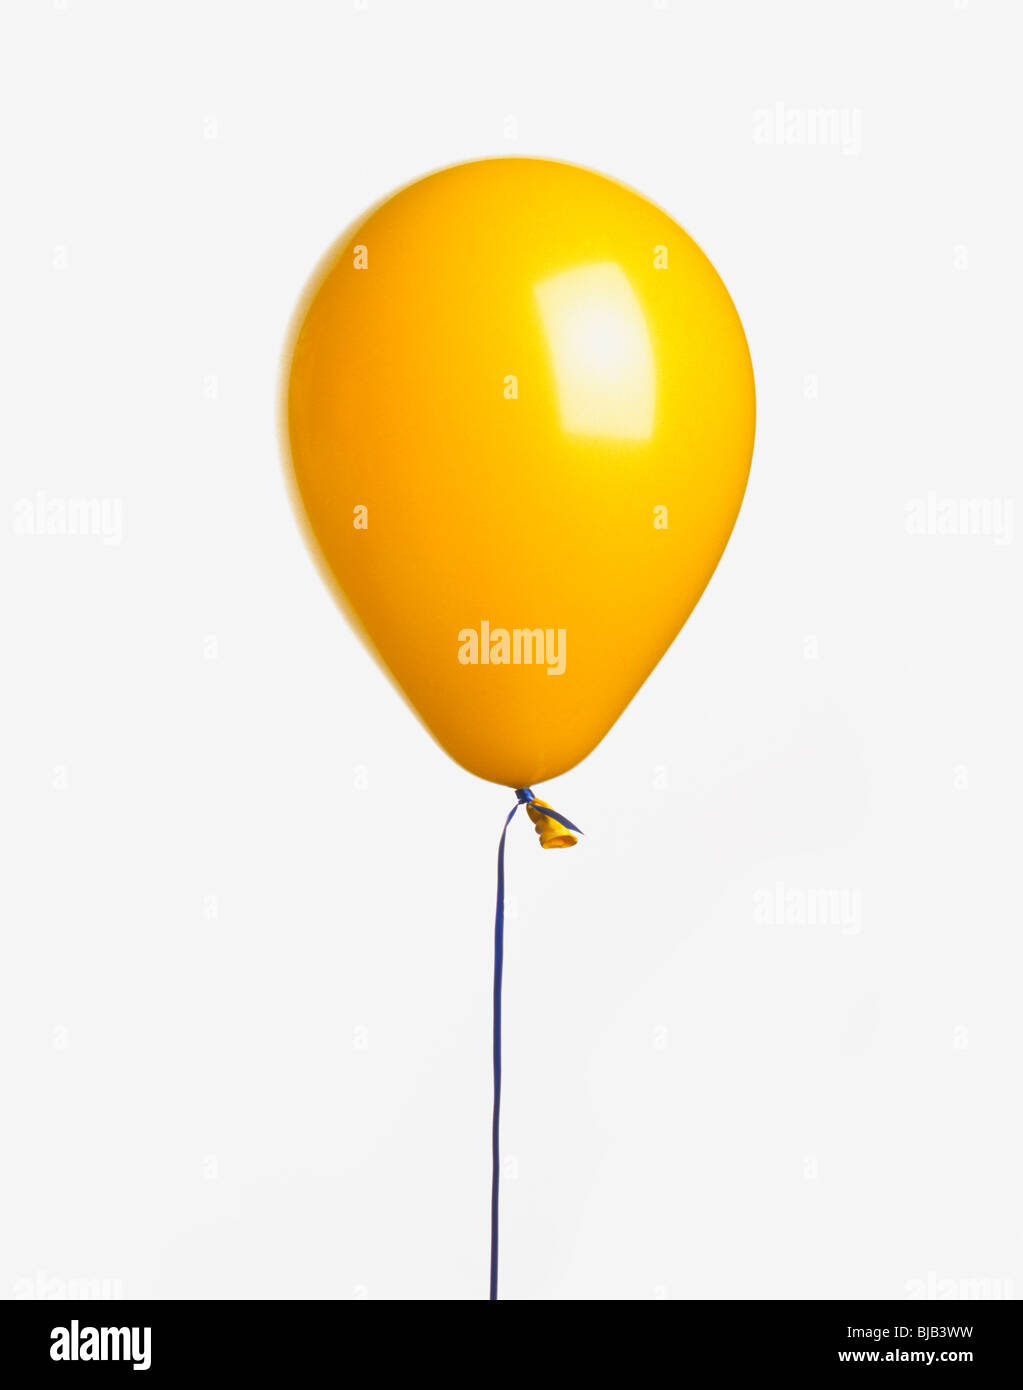 Ballon jaune avec ruban sur fond blanc Banque D'Images